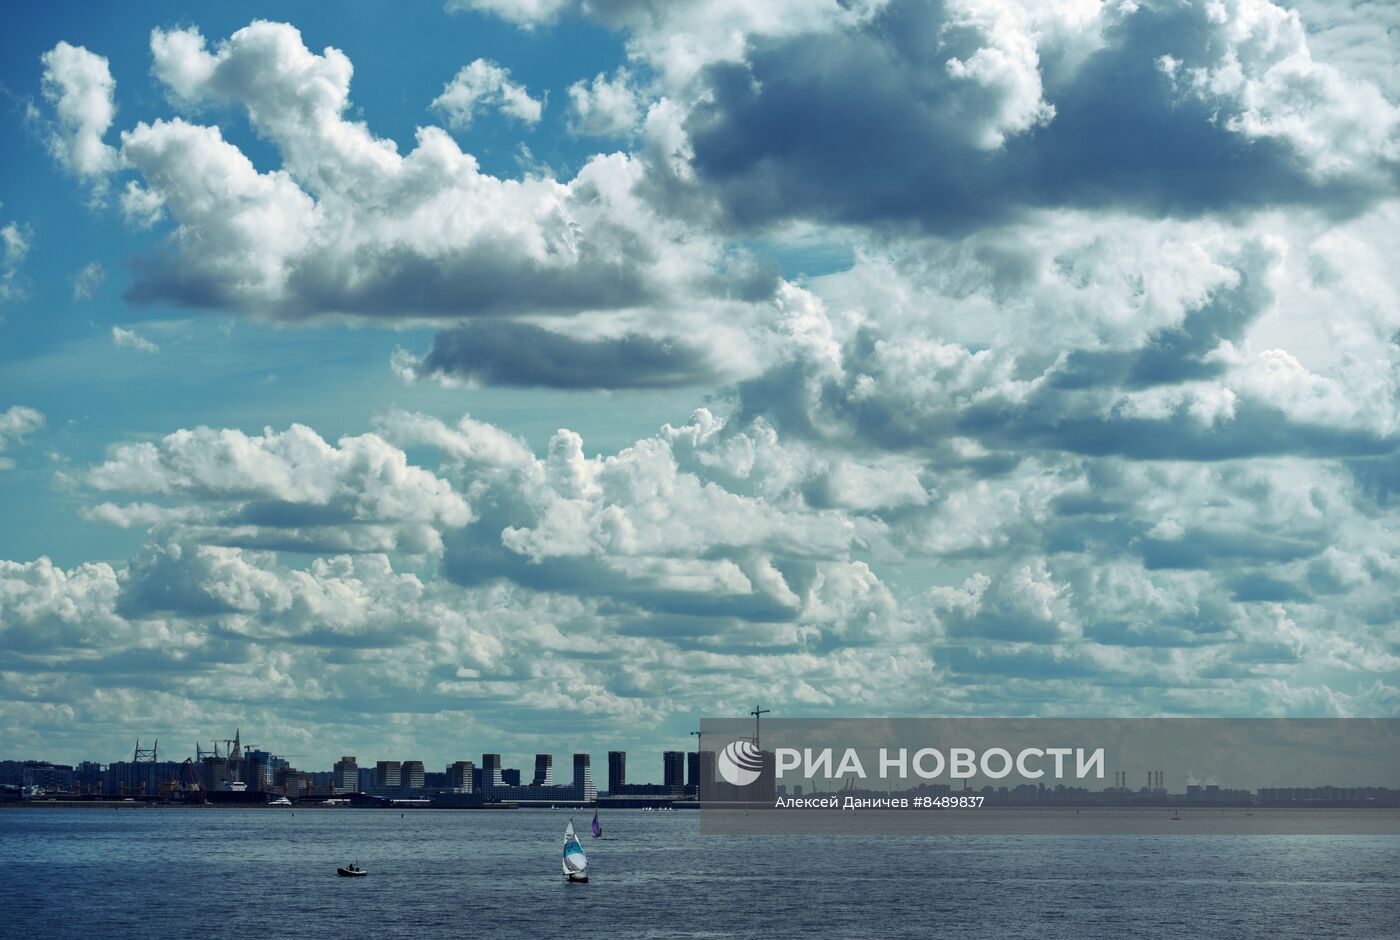 Повседневная жизнь в Санкт-Петербурге